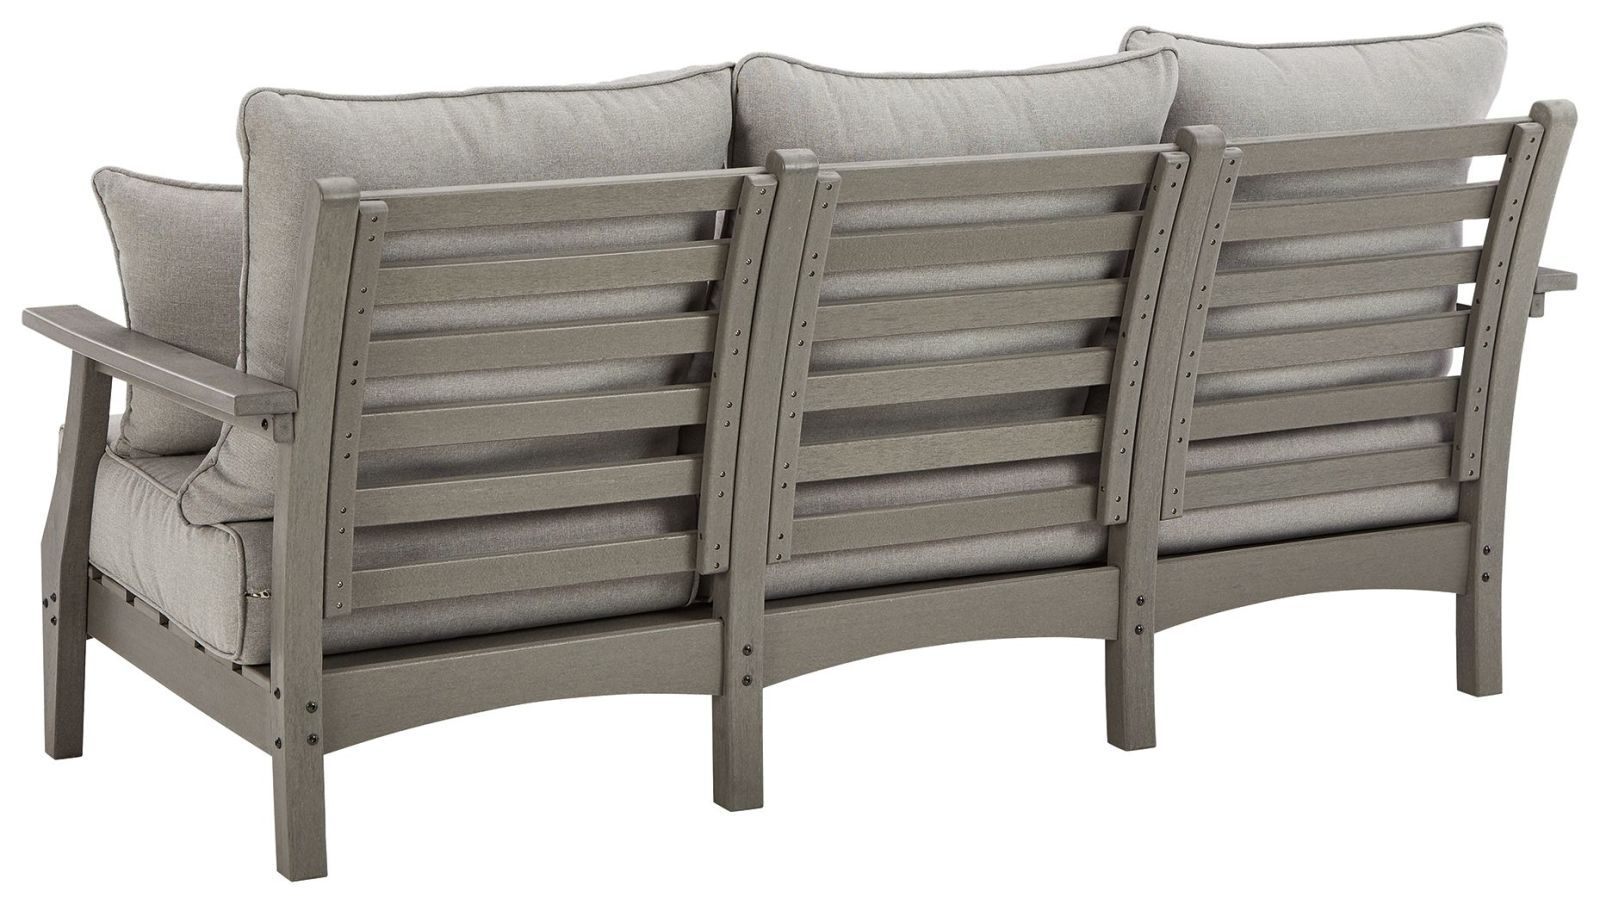 Visola – Gray – Sofa With Cushion P802-838